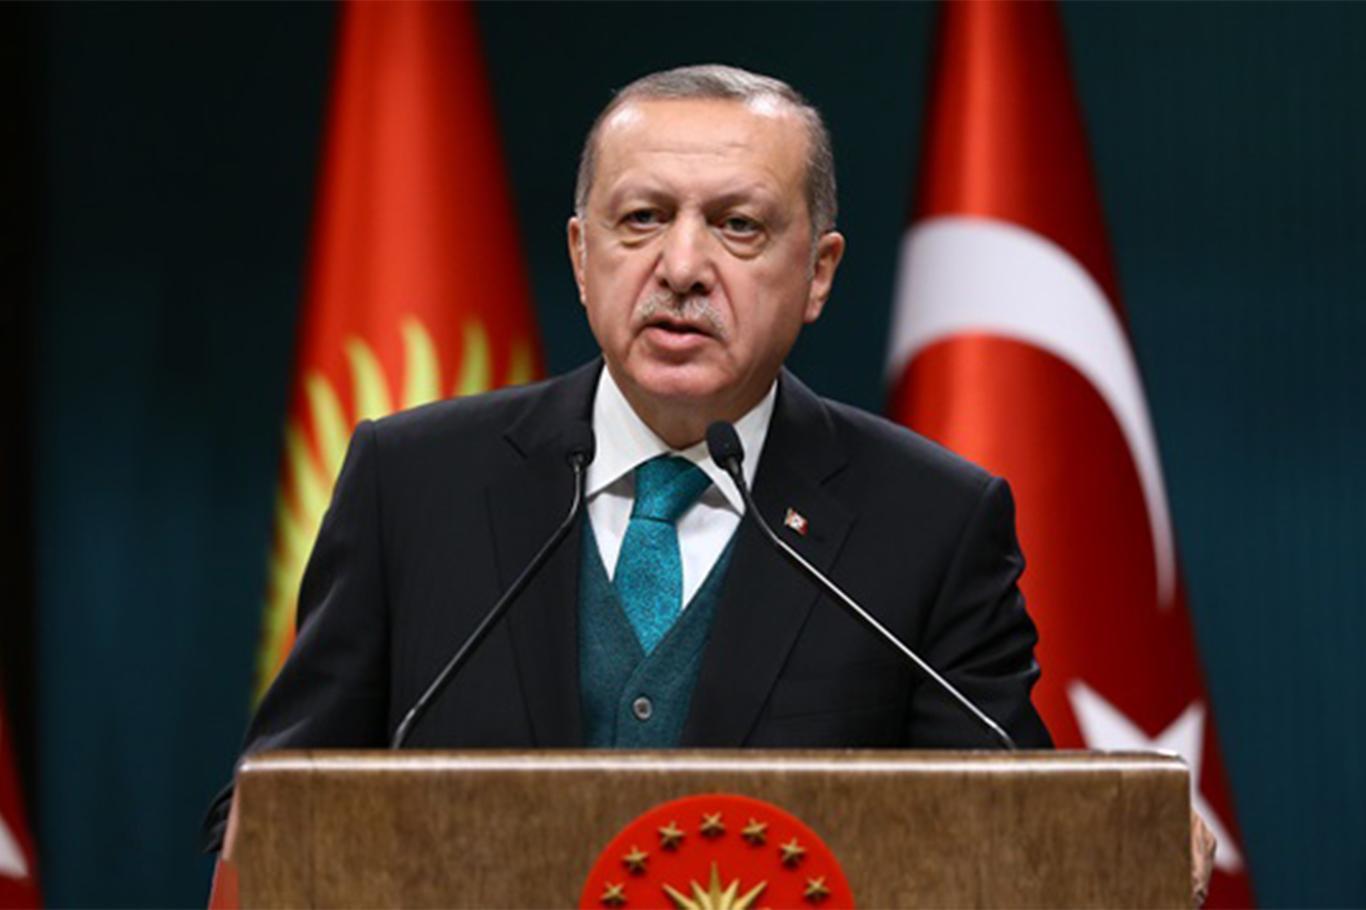 أردوغان: تركيا عبر عملية نبع السلام وجّهت ضربة قاتلة للممر الإرهابي